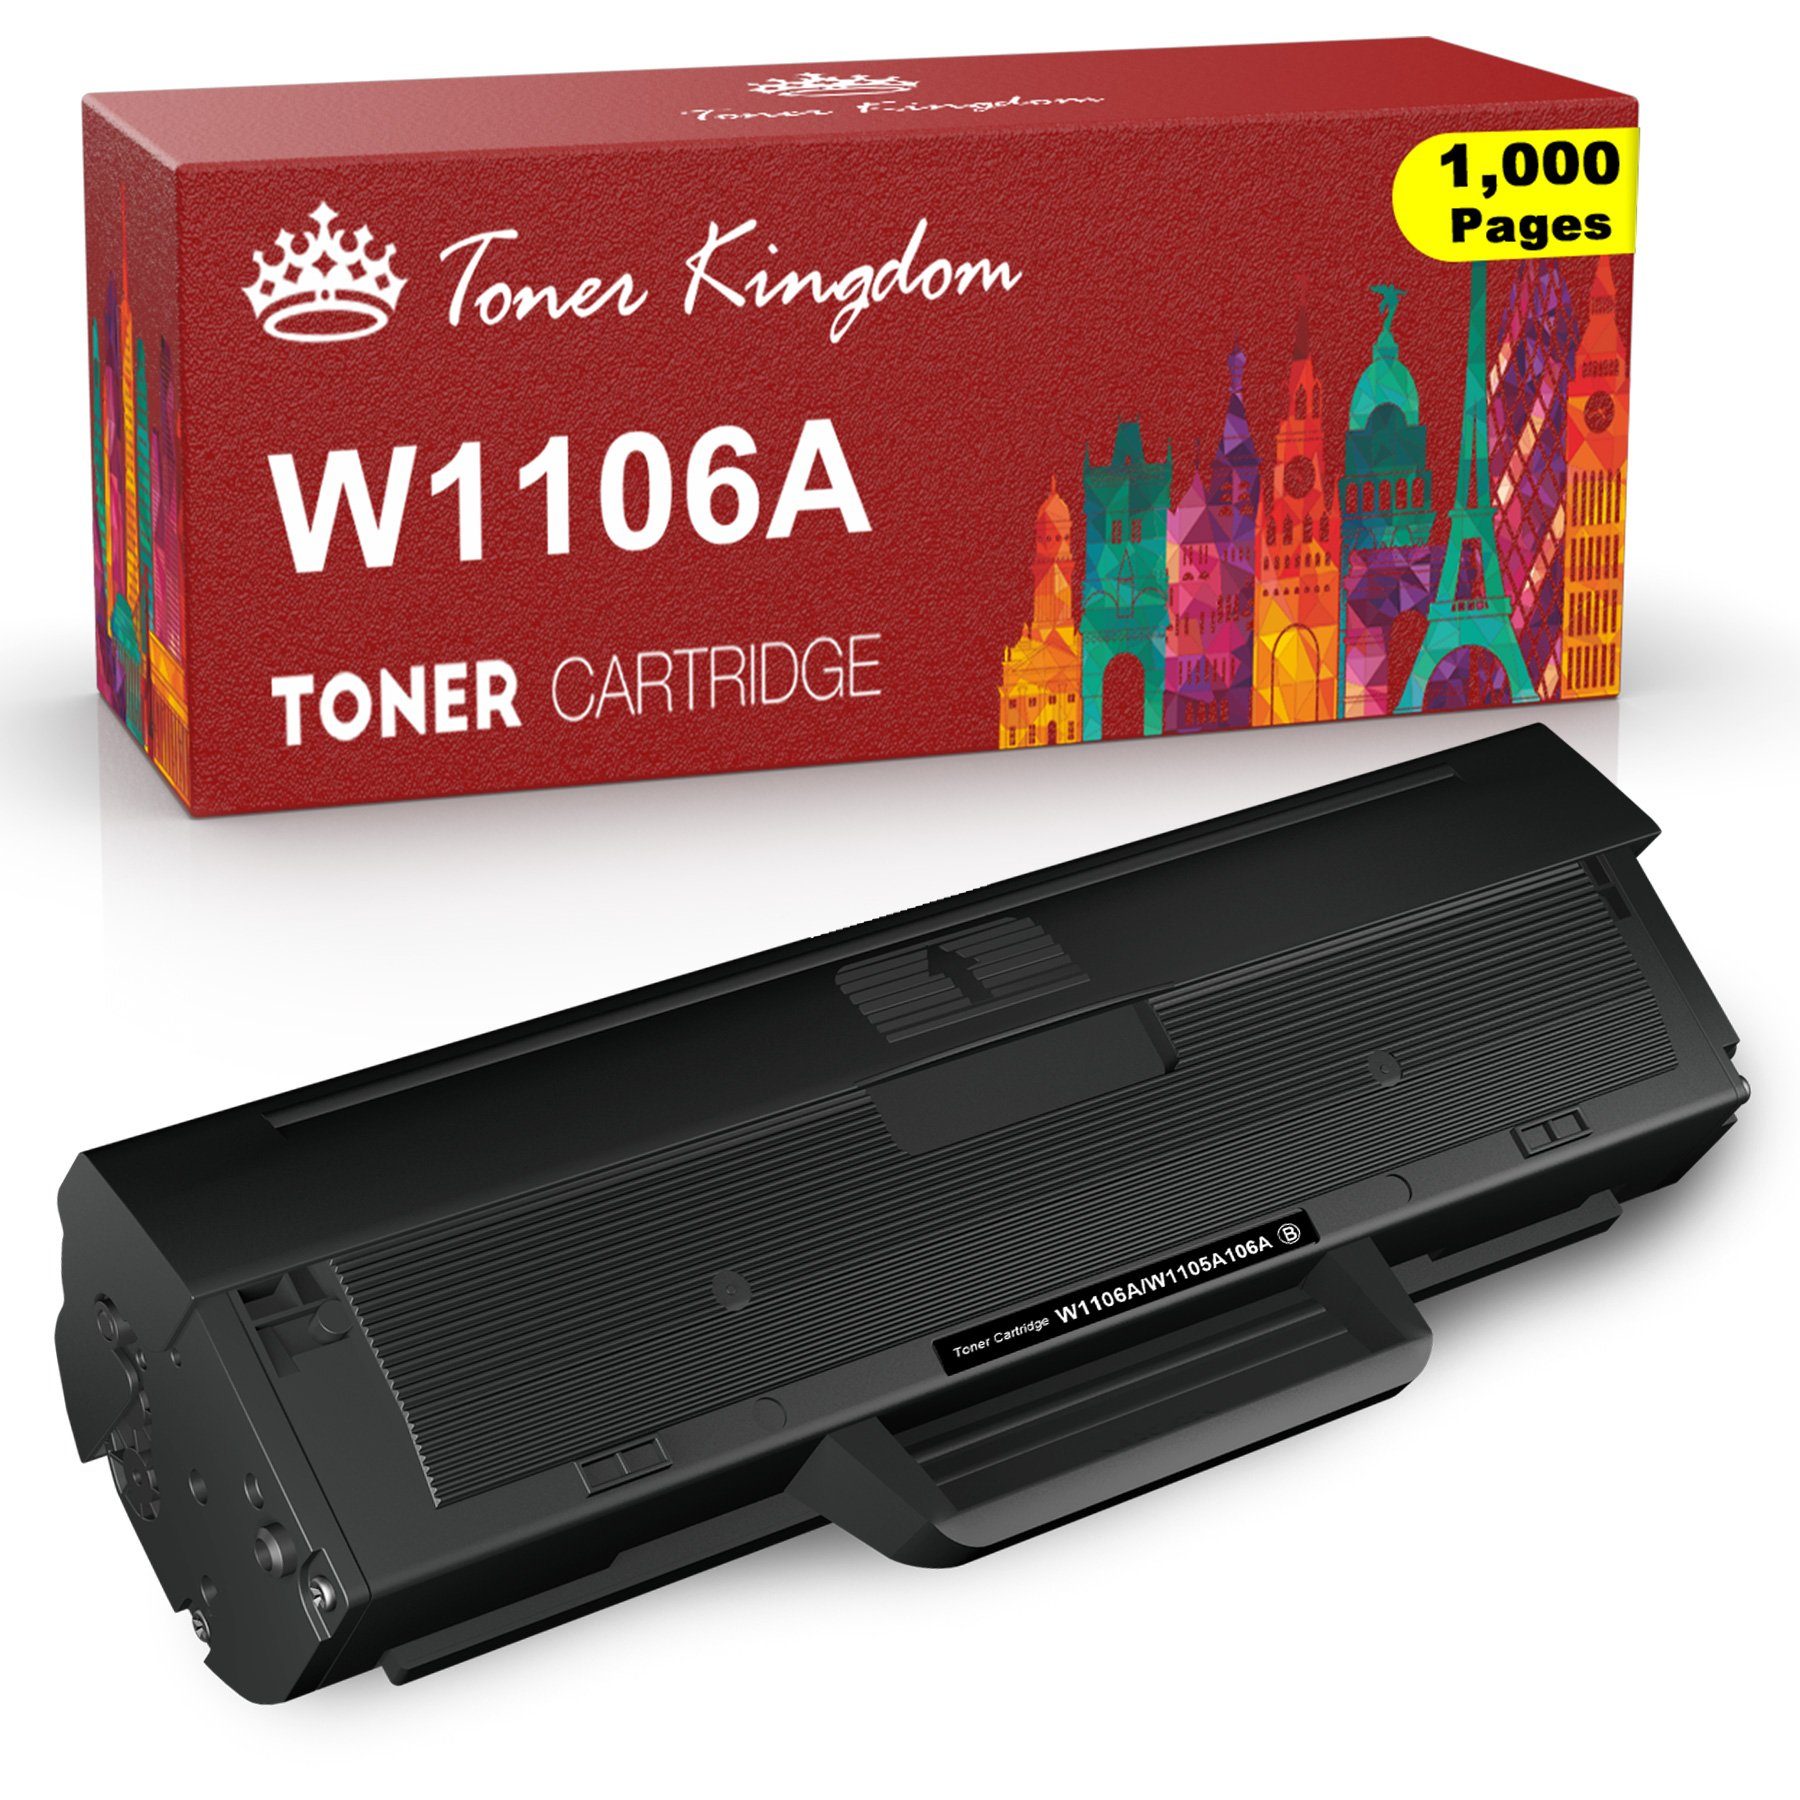 Toner Kingdom Tonerpatrone 106A für MFP 135a 107a (Mit HP Laser 137fnw W1106A, 135wg chip, 1-St)